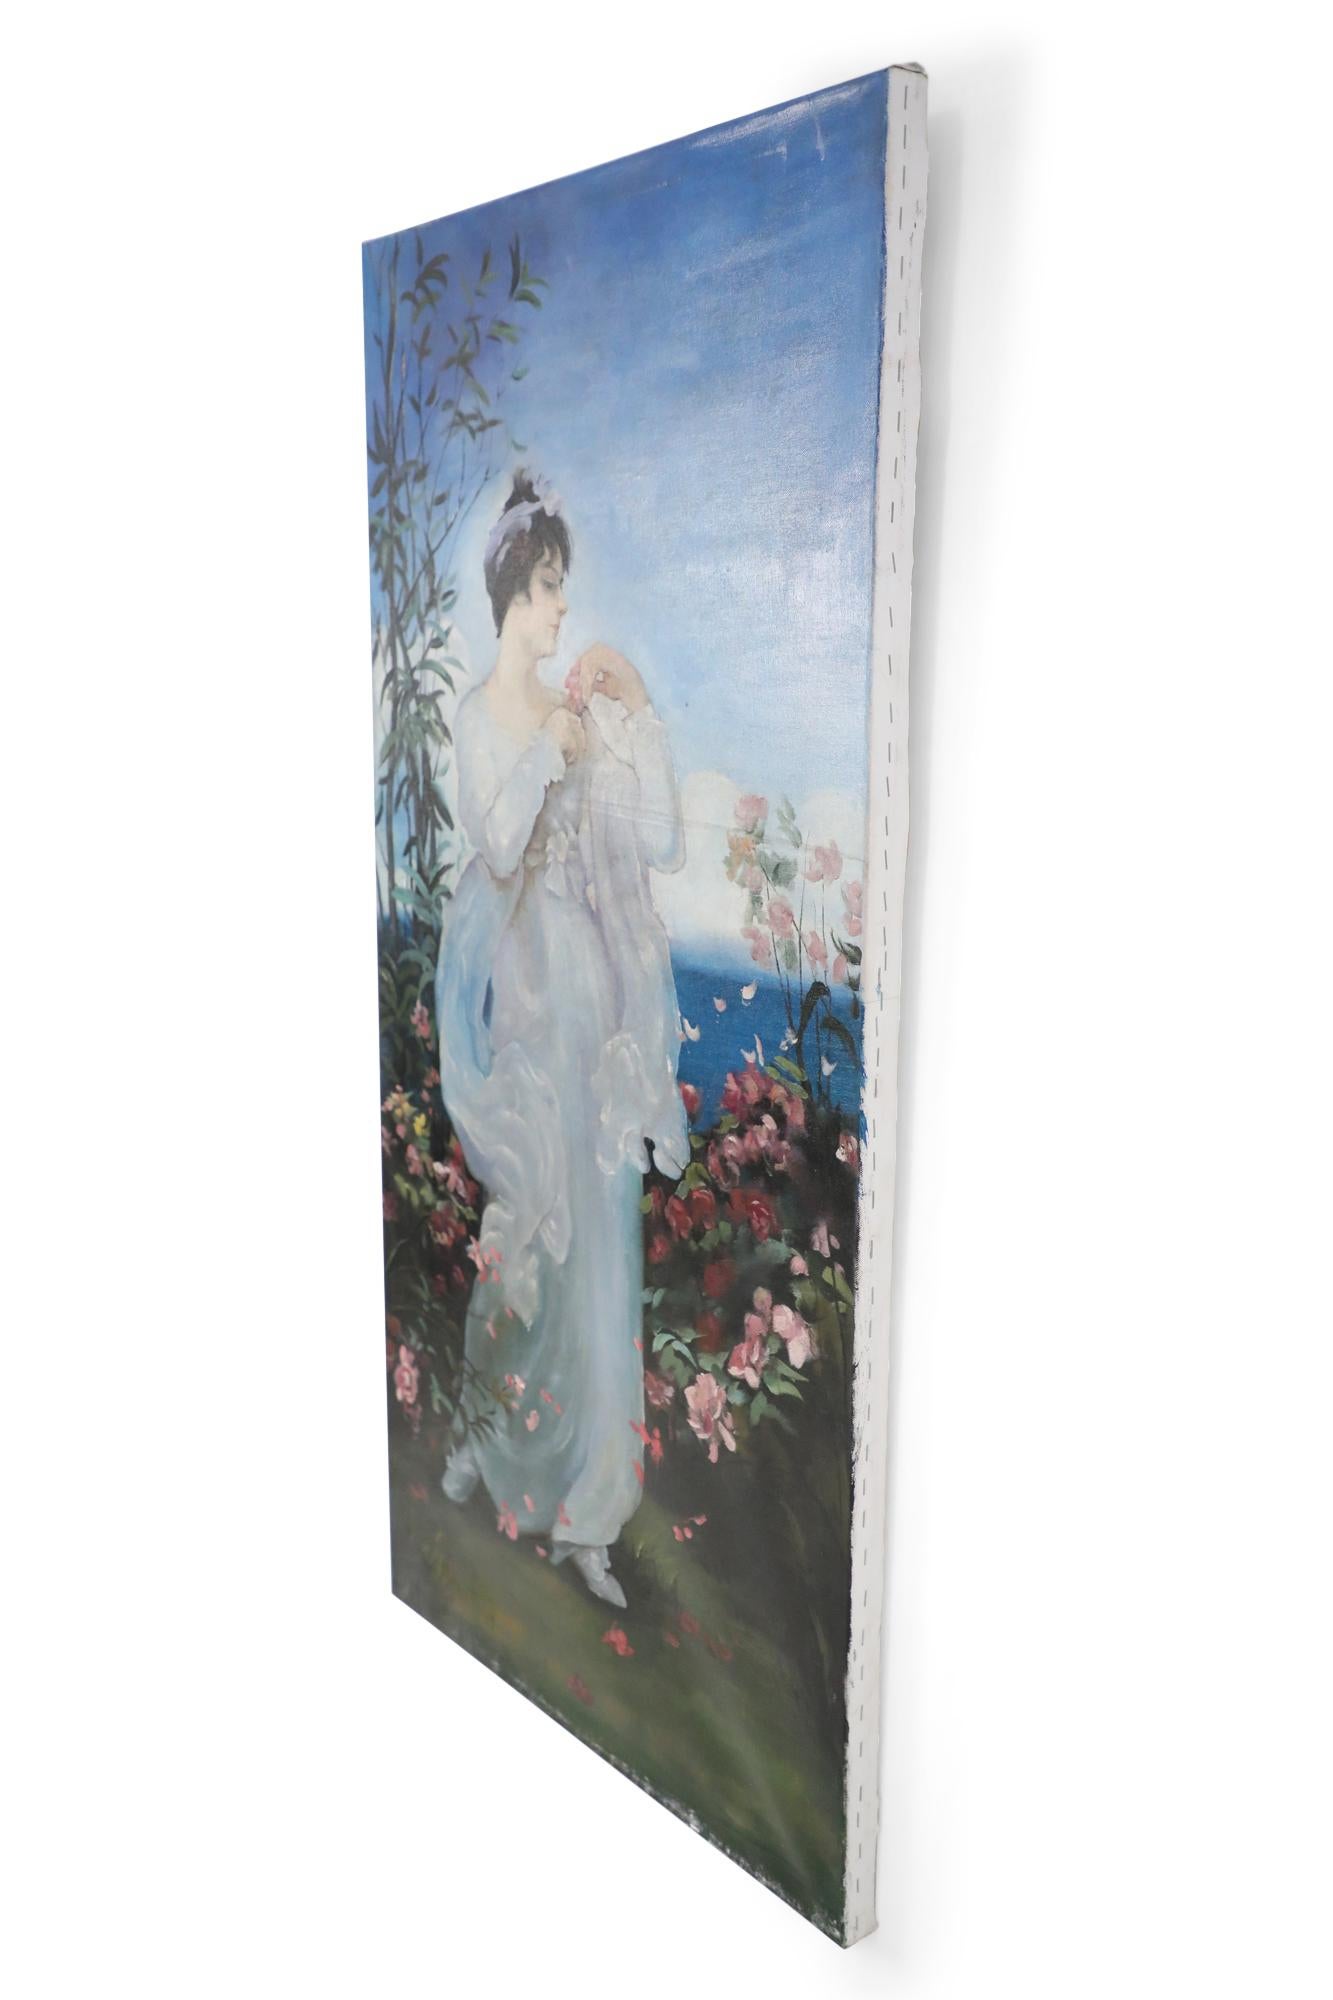 Vieille peinture à l'huile de style néoclassique (20e siècle) représentant une femme dans une robe blanche flottante, debout dans un jardin rempli de roses roses, avec la mer et le ciel au loin. Peint sur une toile non encadrée.
   